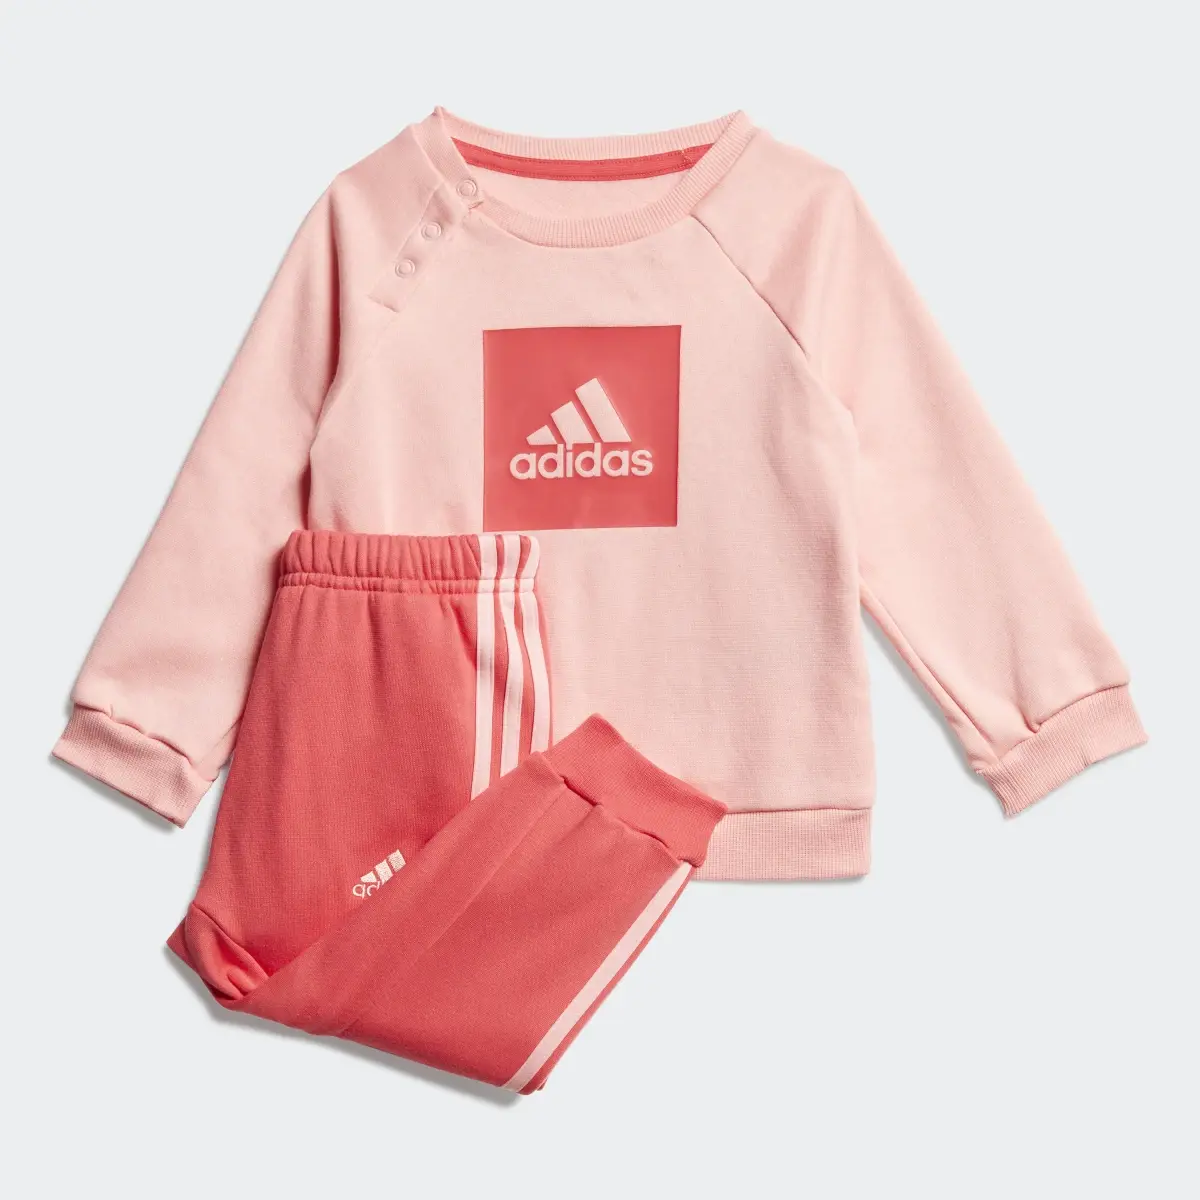 Adidas Conjunto em Fleece 3-Stripes. 2